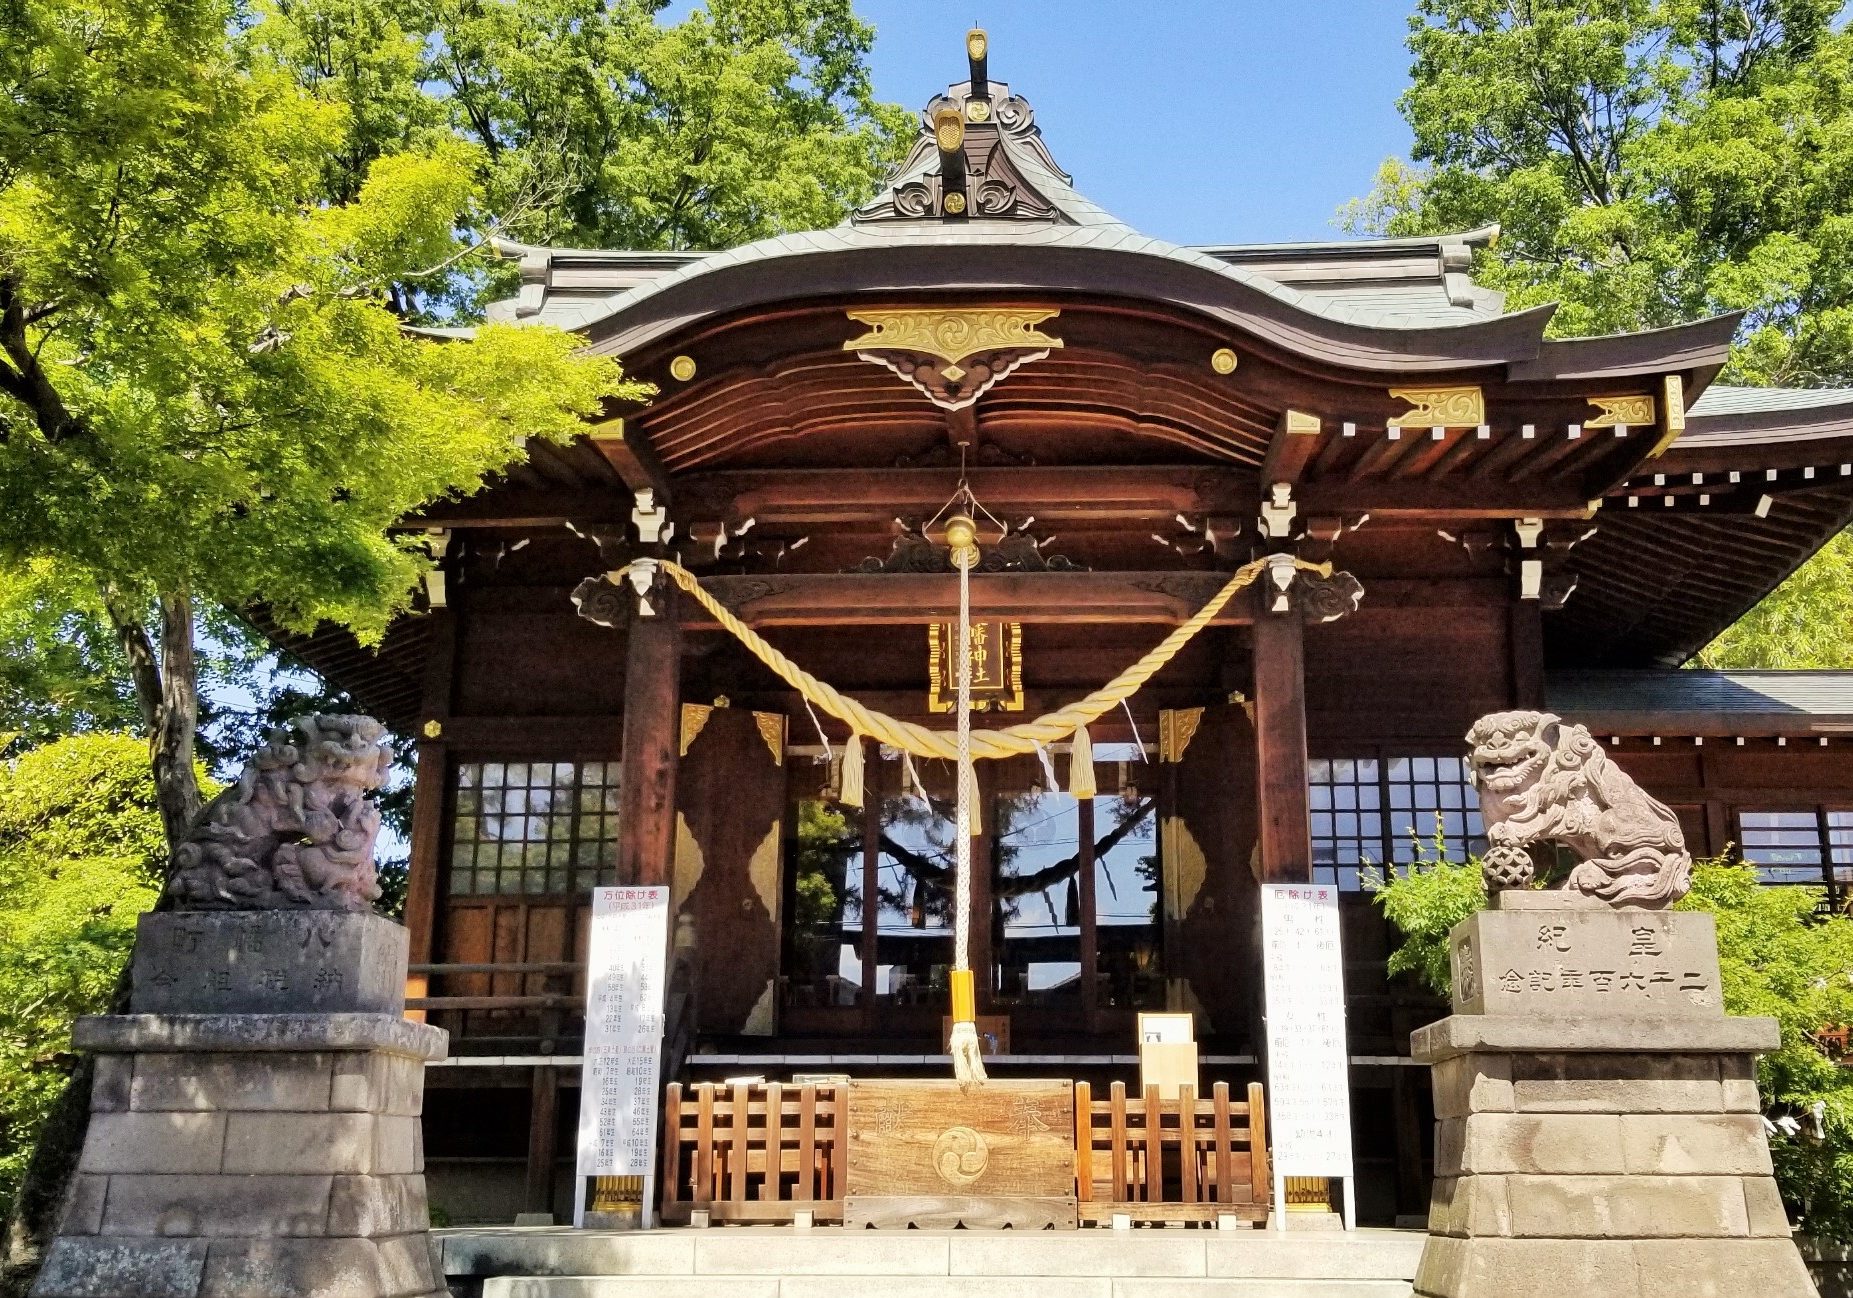 行田八幡神社 埼玉県公式観光サイト ちょこたび埼玉